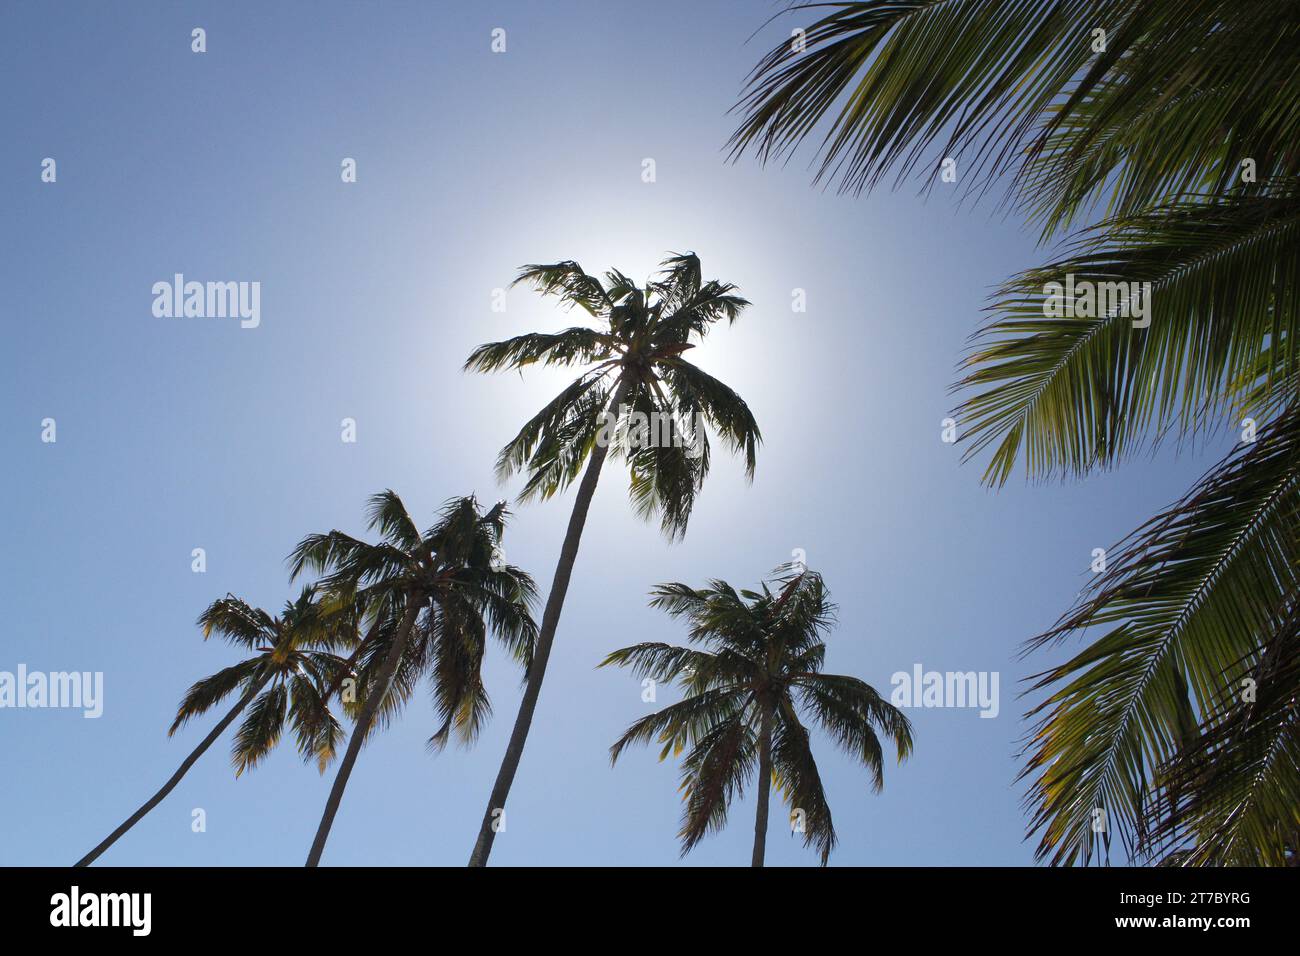 12th, january, 2017; Maceio, Alagoas, Brasil. Palm trees abound on the beaches of Maceio Stock Photo